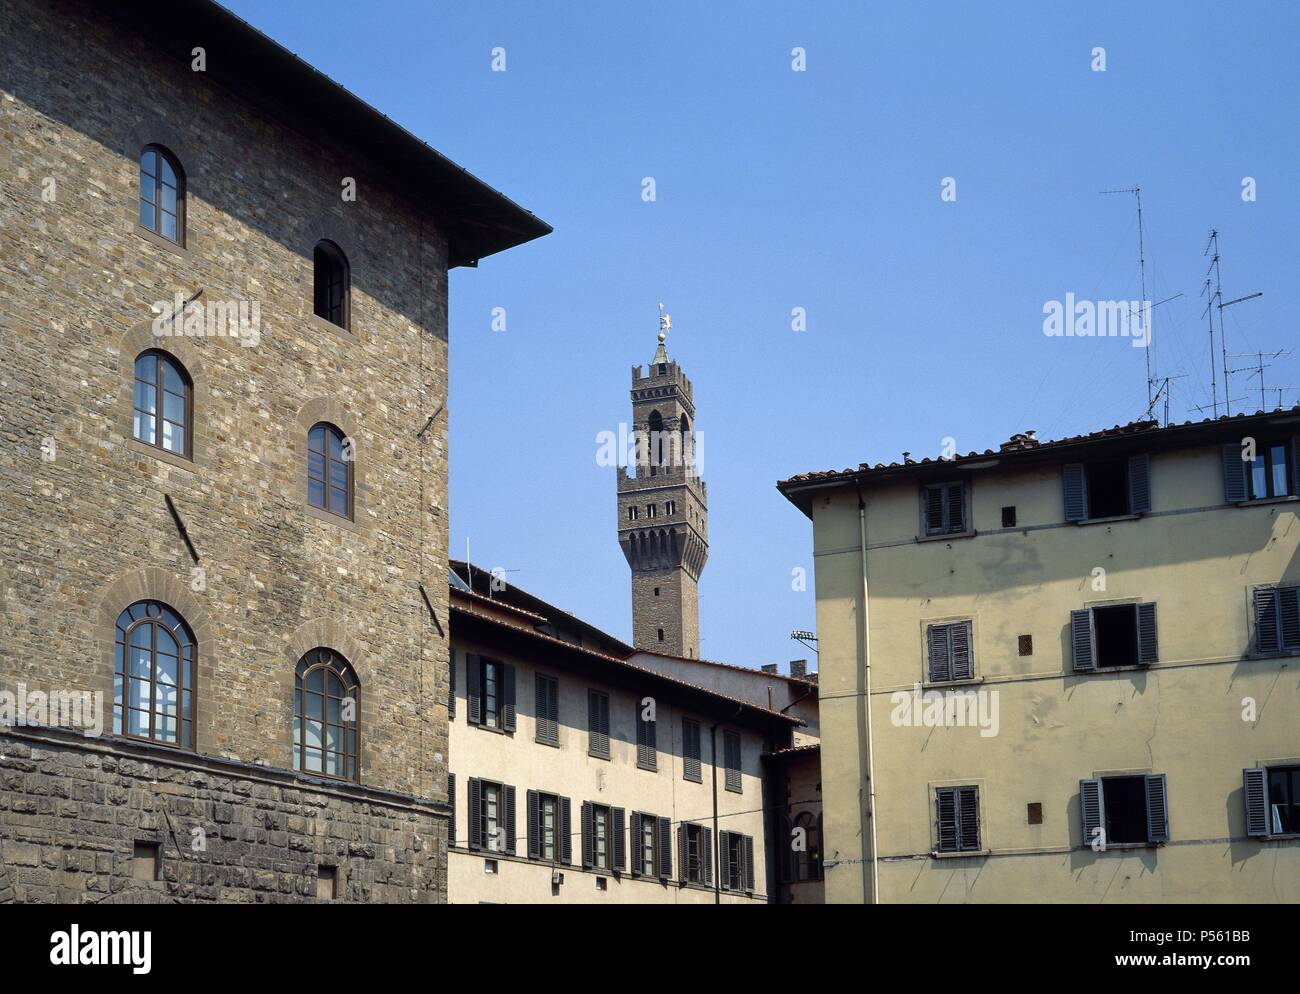 ITALIA. FLORENCIA. Vista parcial del barrio de Santa Croce con la torre medieval del Palacio Vecchio al fondo. La Toscana. Stock Photo